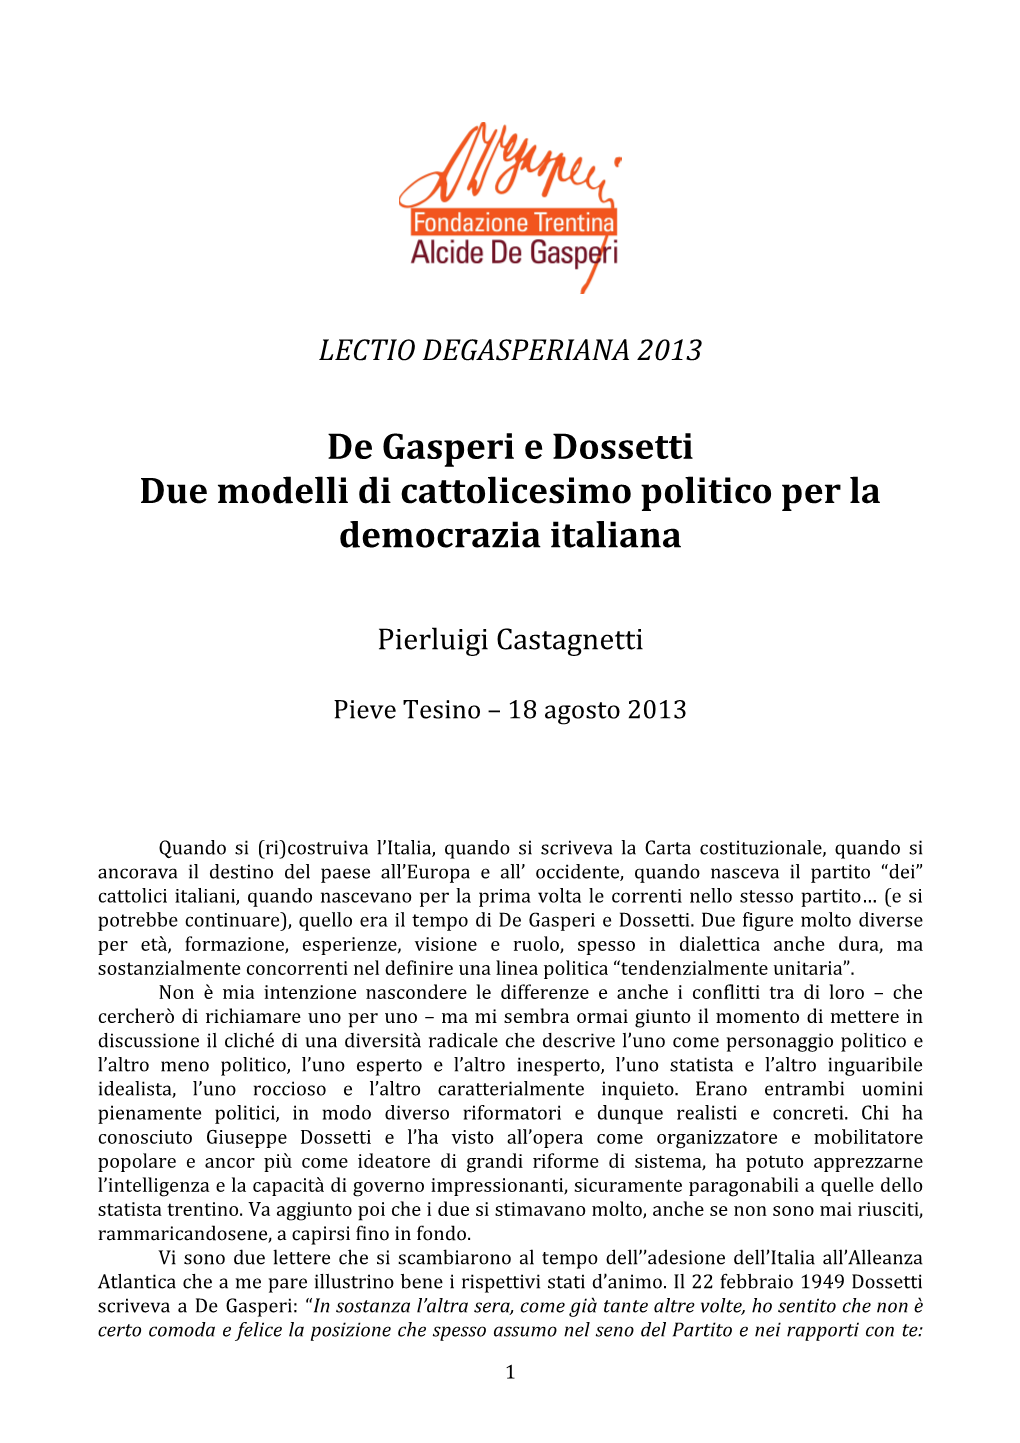 De Gasperi E Dossetti Due Modelli Di Cattolicesimo Politico Per La Democrazia Italiana